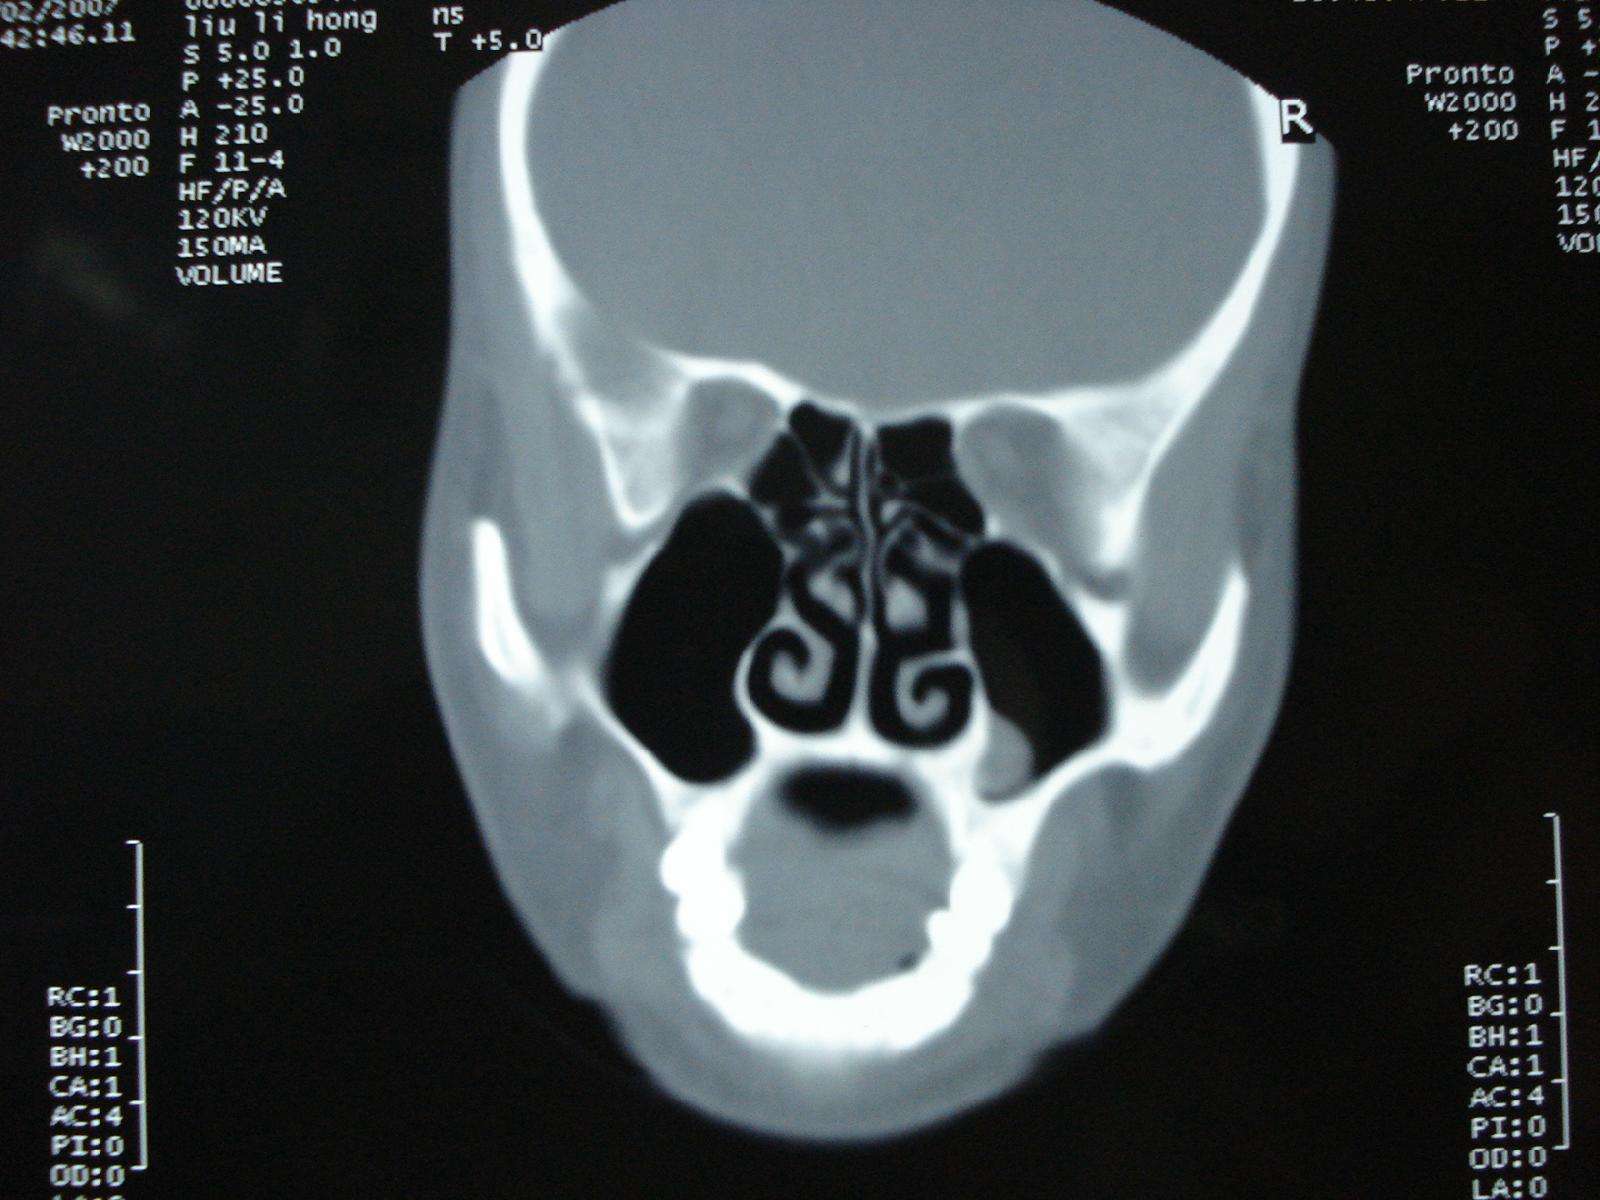 上颌窦囊肿位置图图片